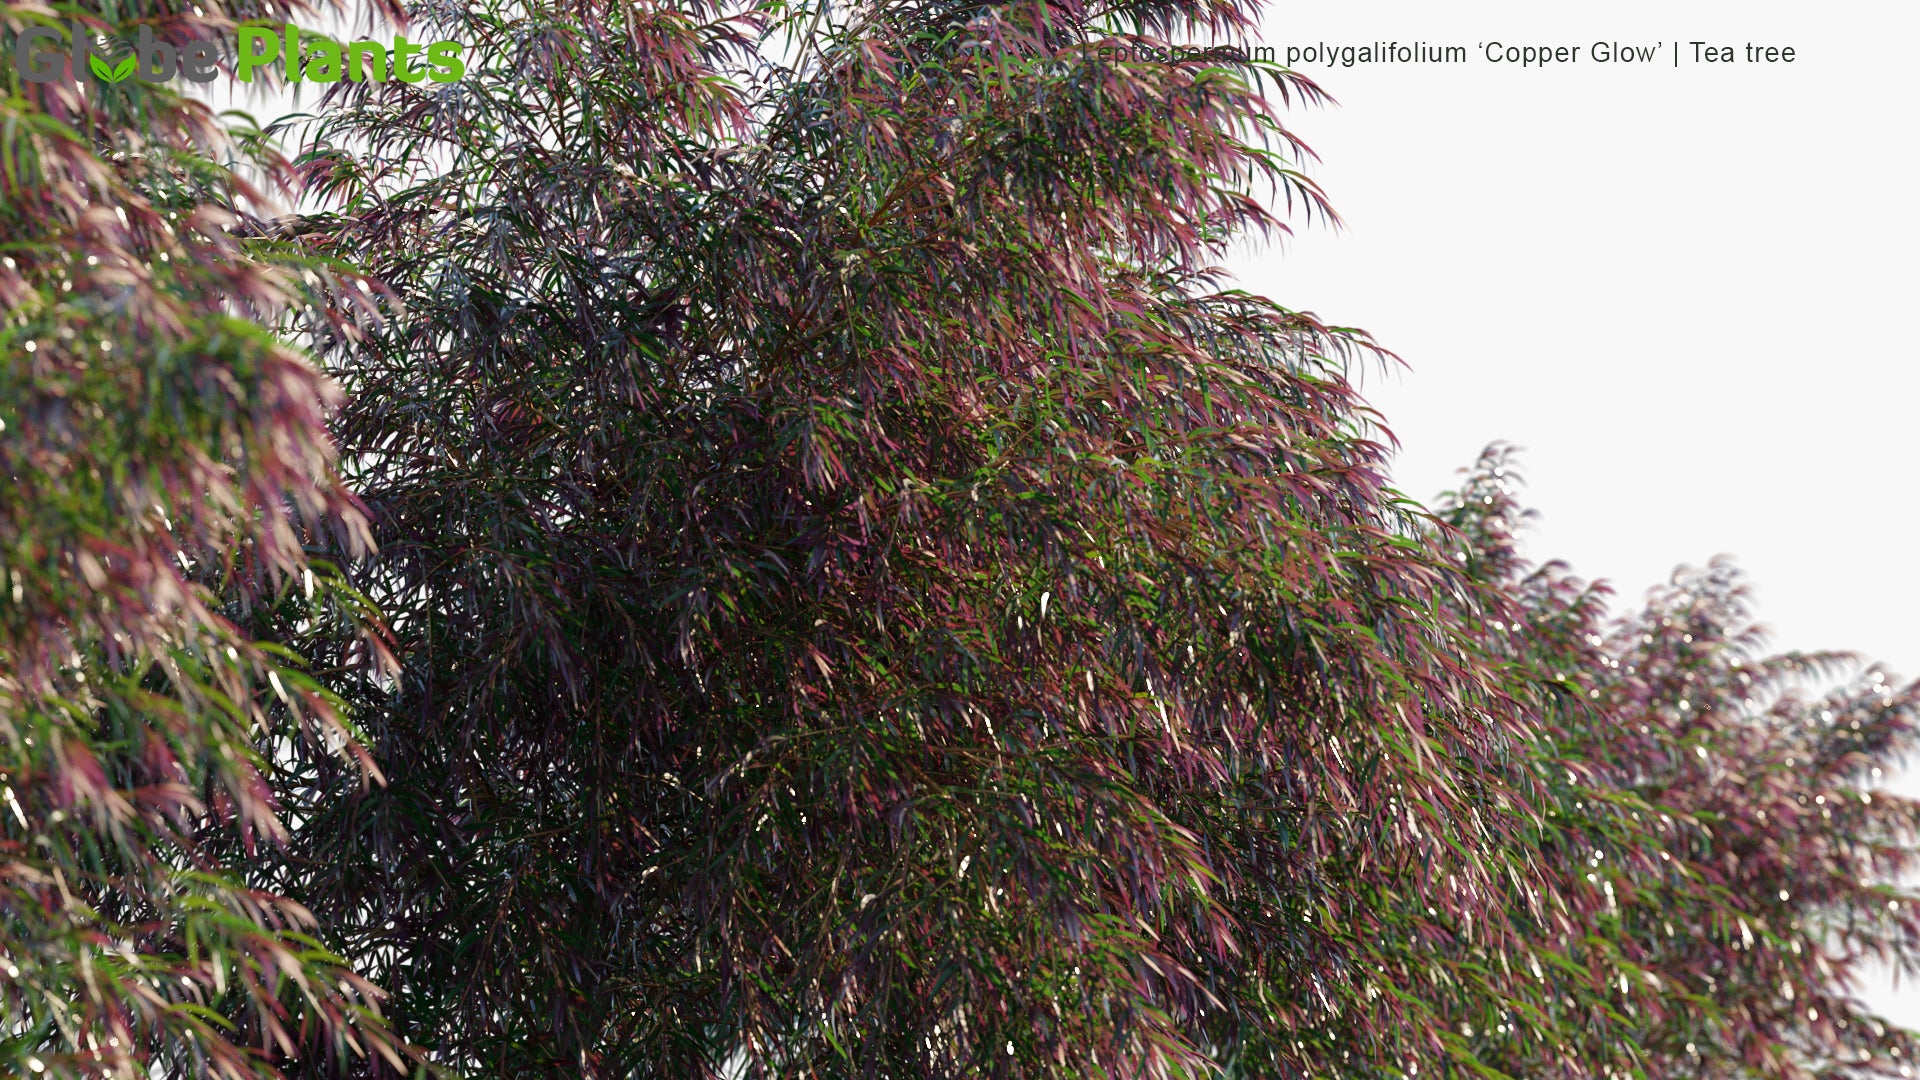 Leptospermum Polygalifolium 'Copper Glow' - Tea Tree